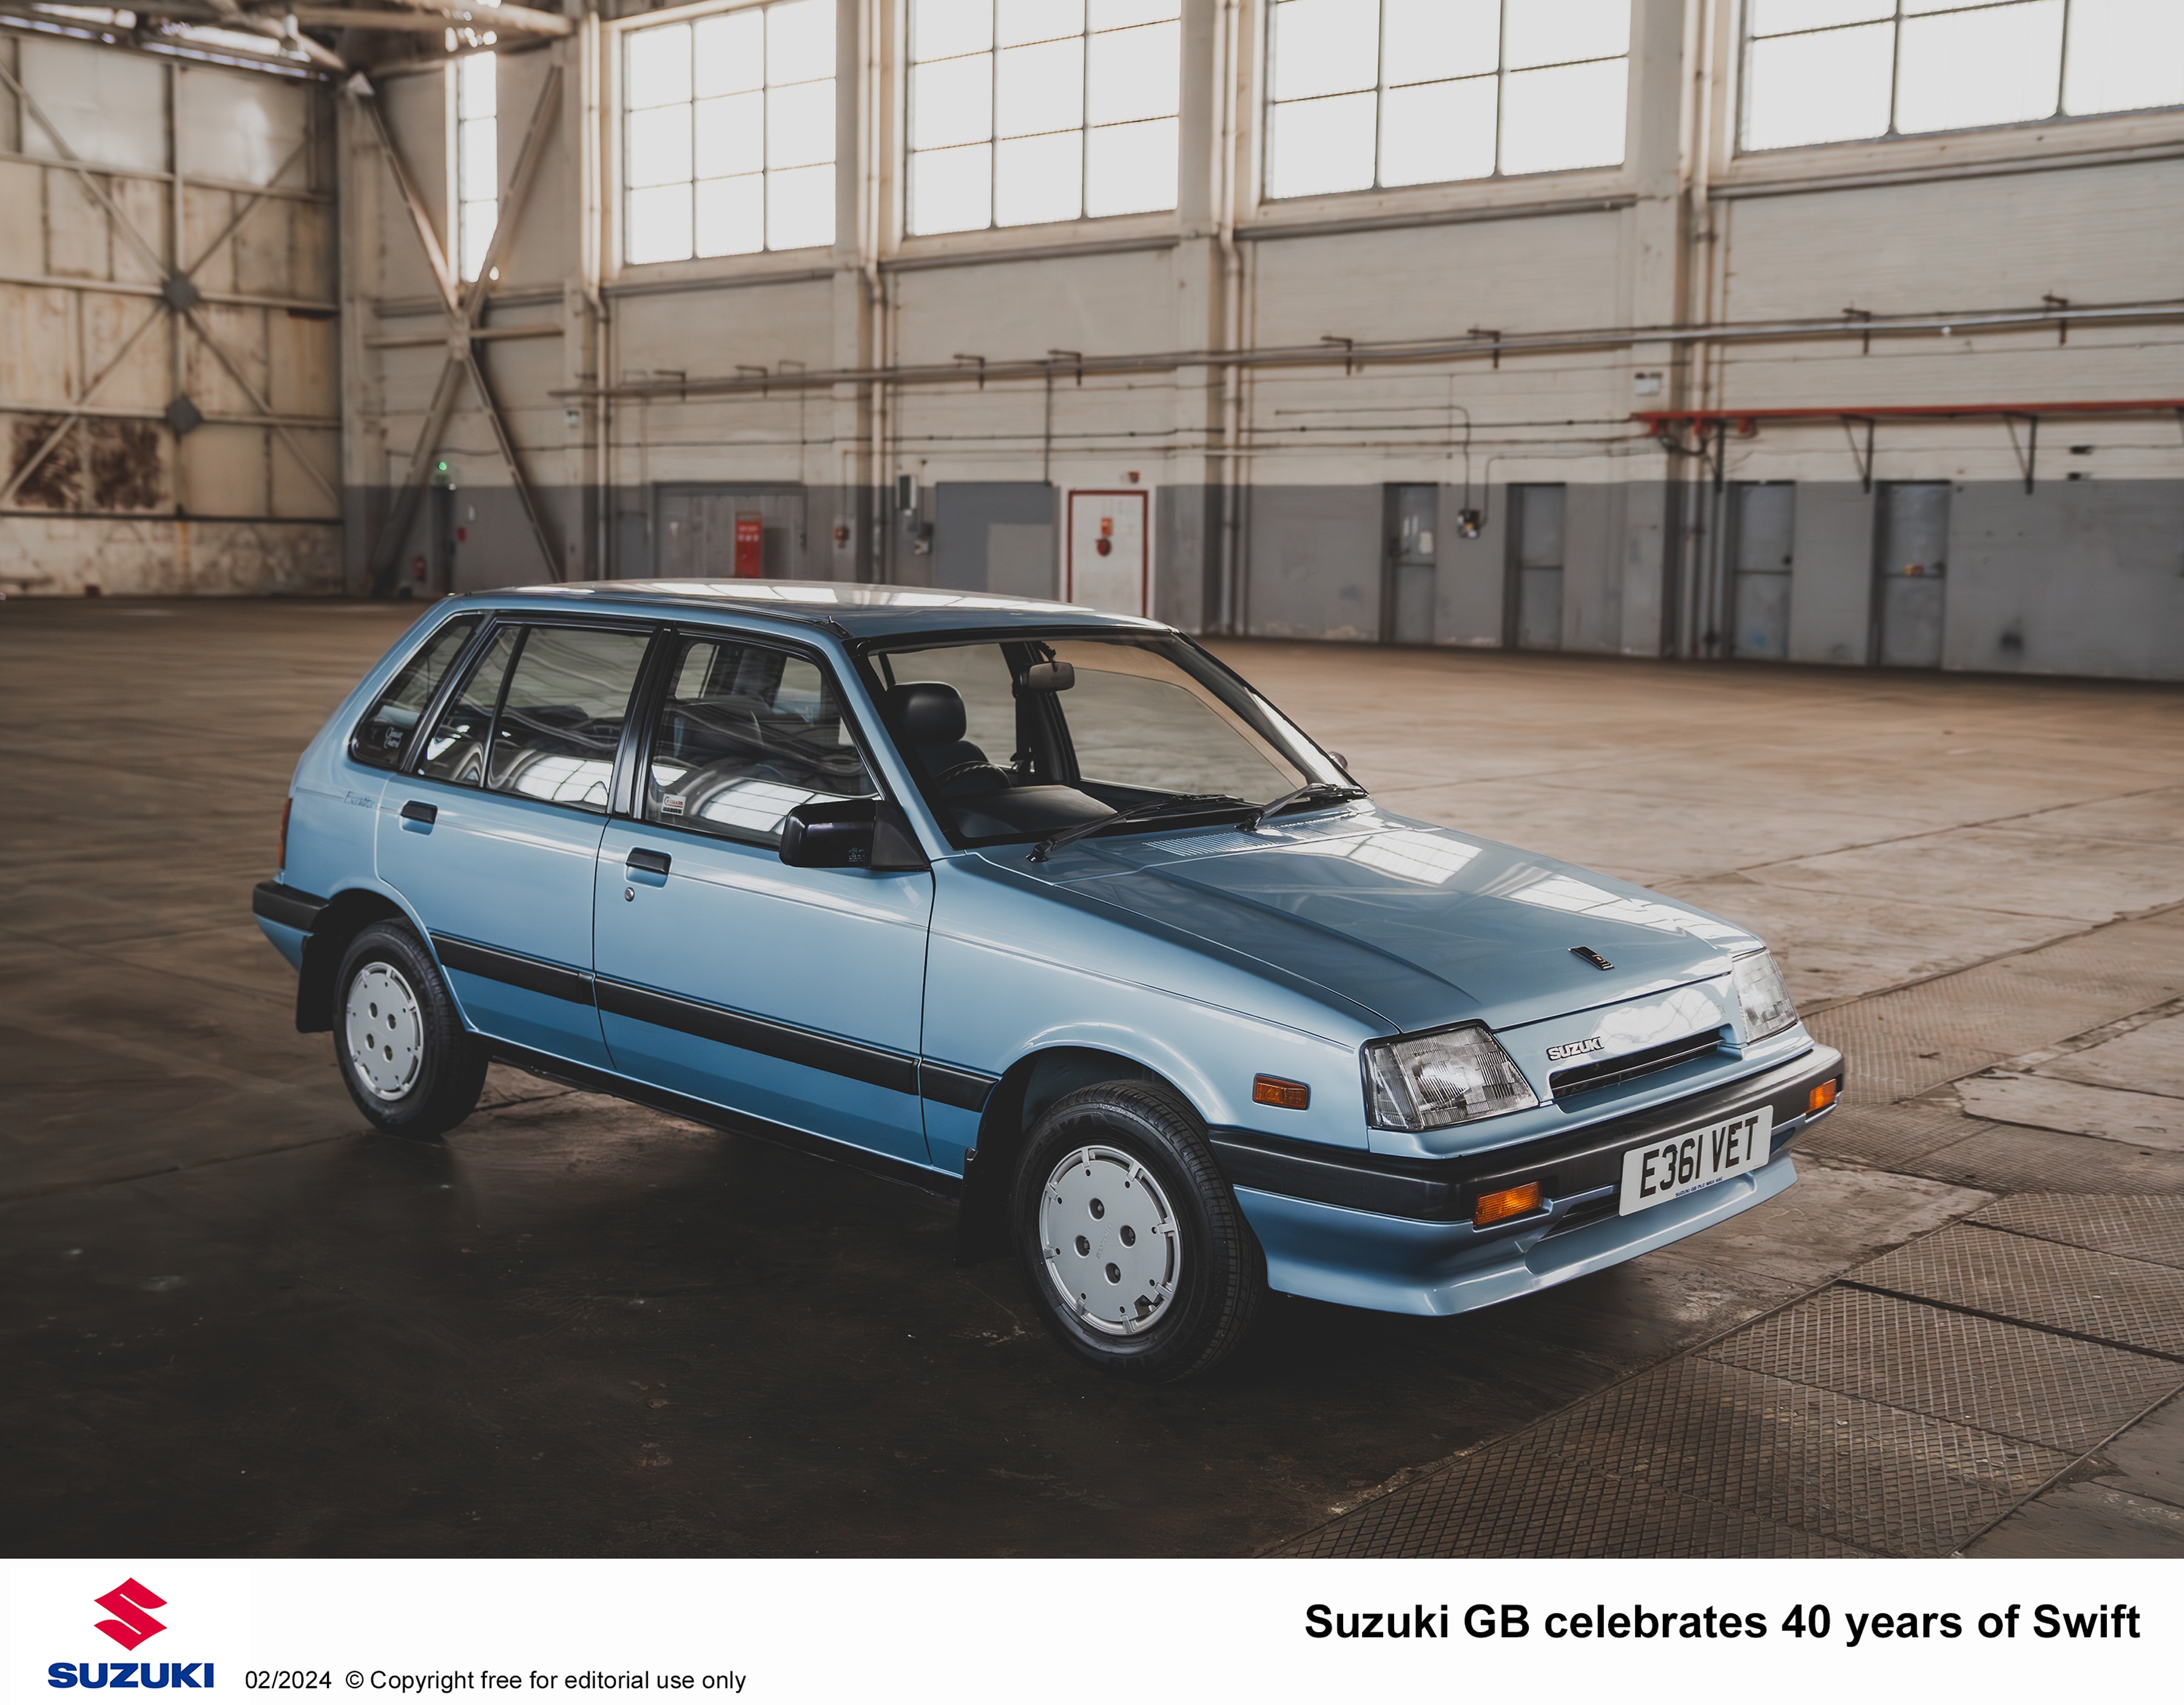 Suzuki GB celebrates 40 years of Swift